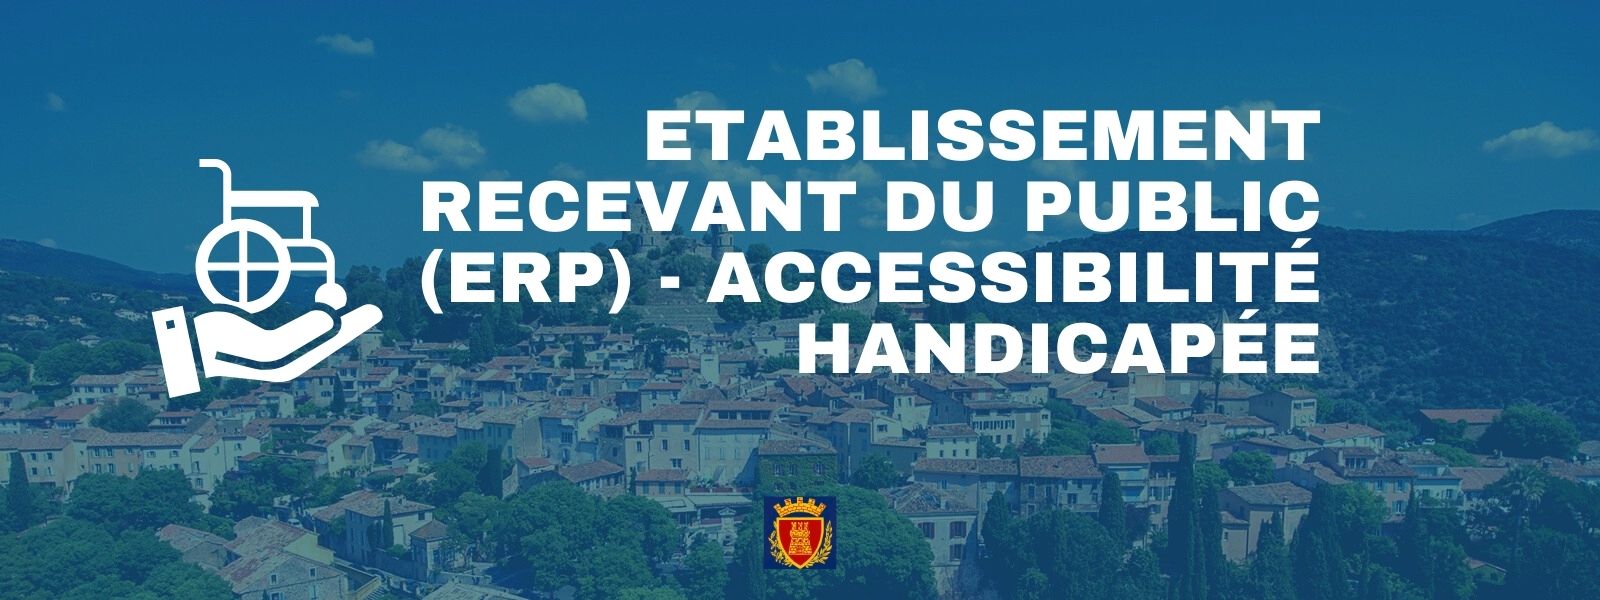 Etablissement Recevant du Public (ERP) - Accessibilité handicapée